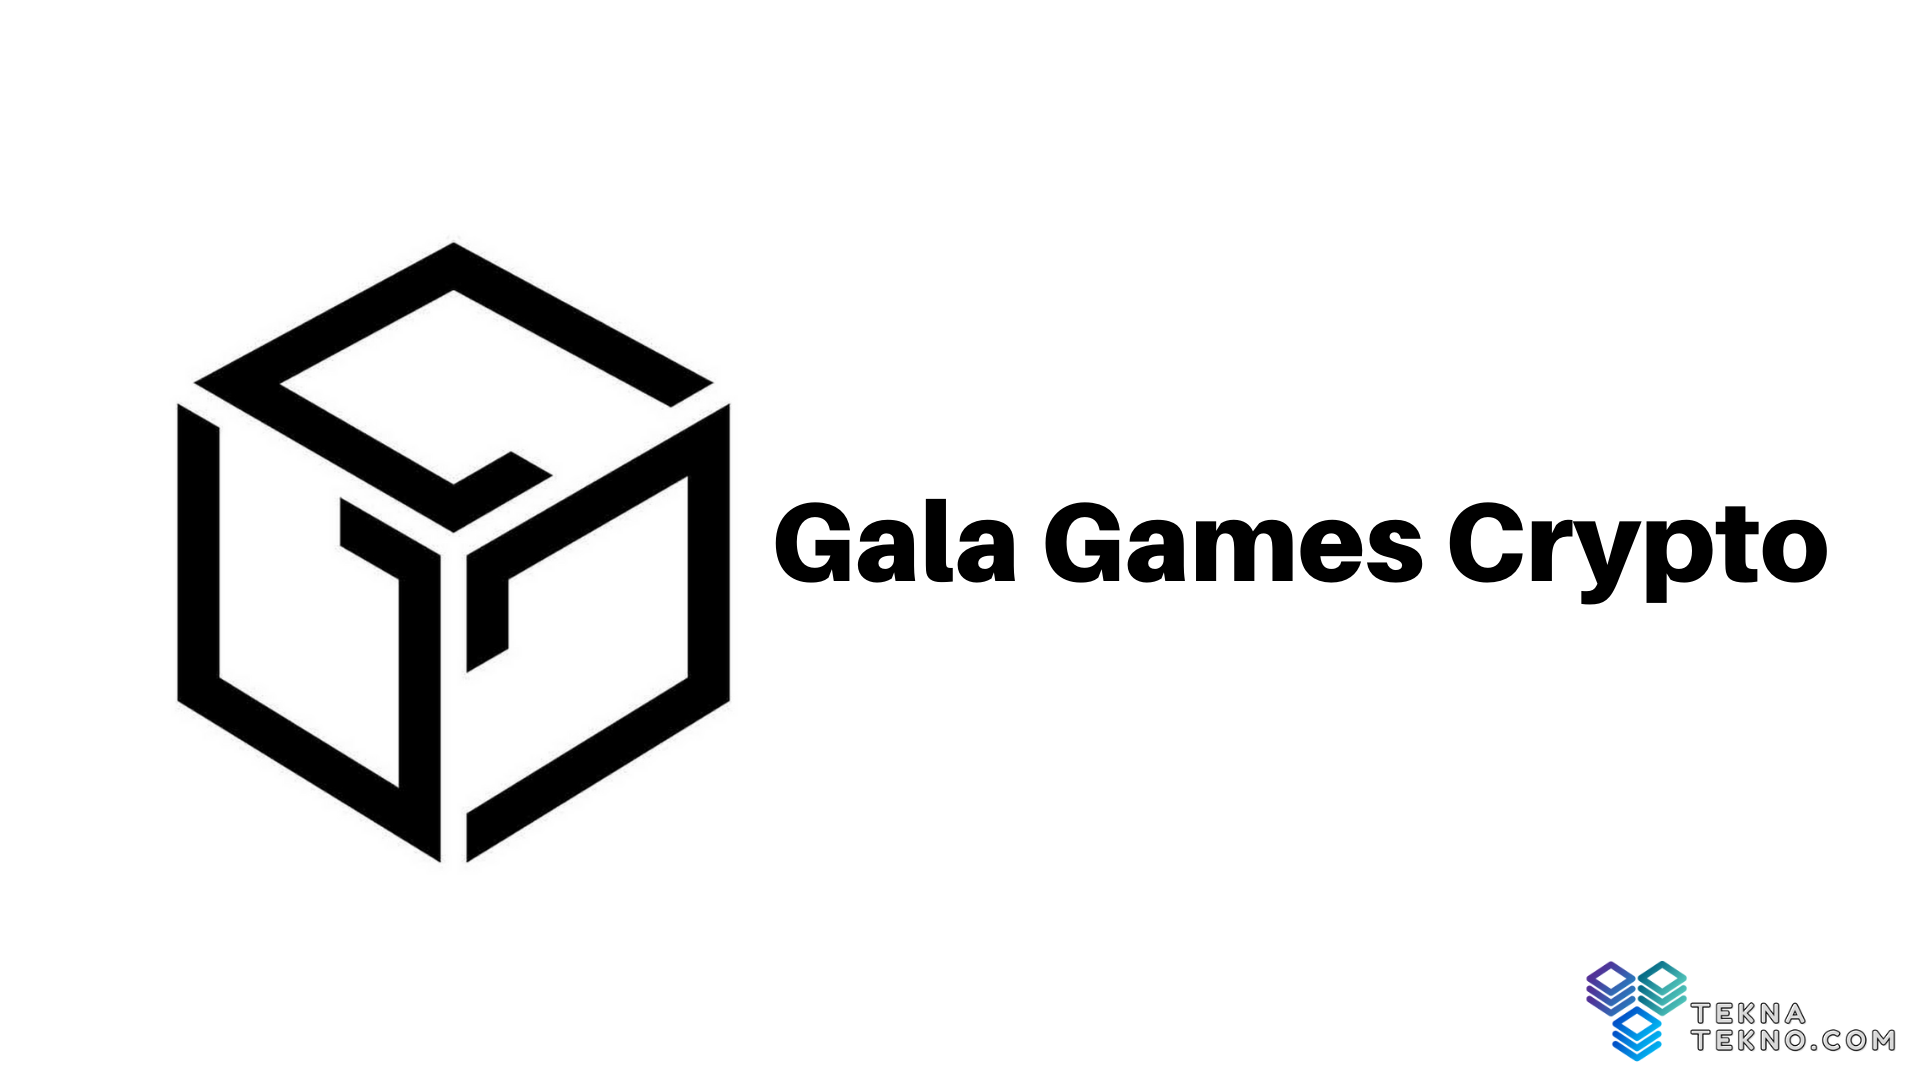 Prediksi Harga Gala Games Crypto: Bisakah Mencapai $1?